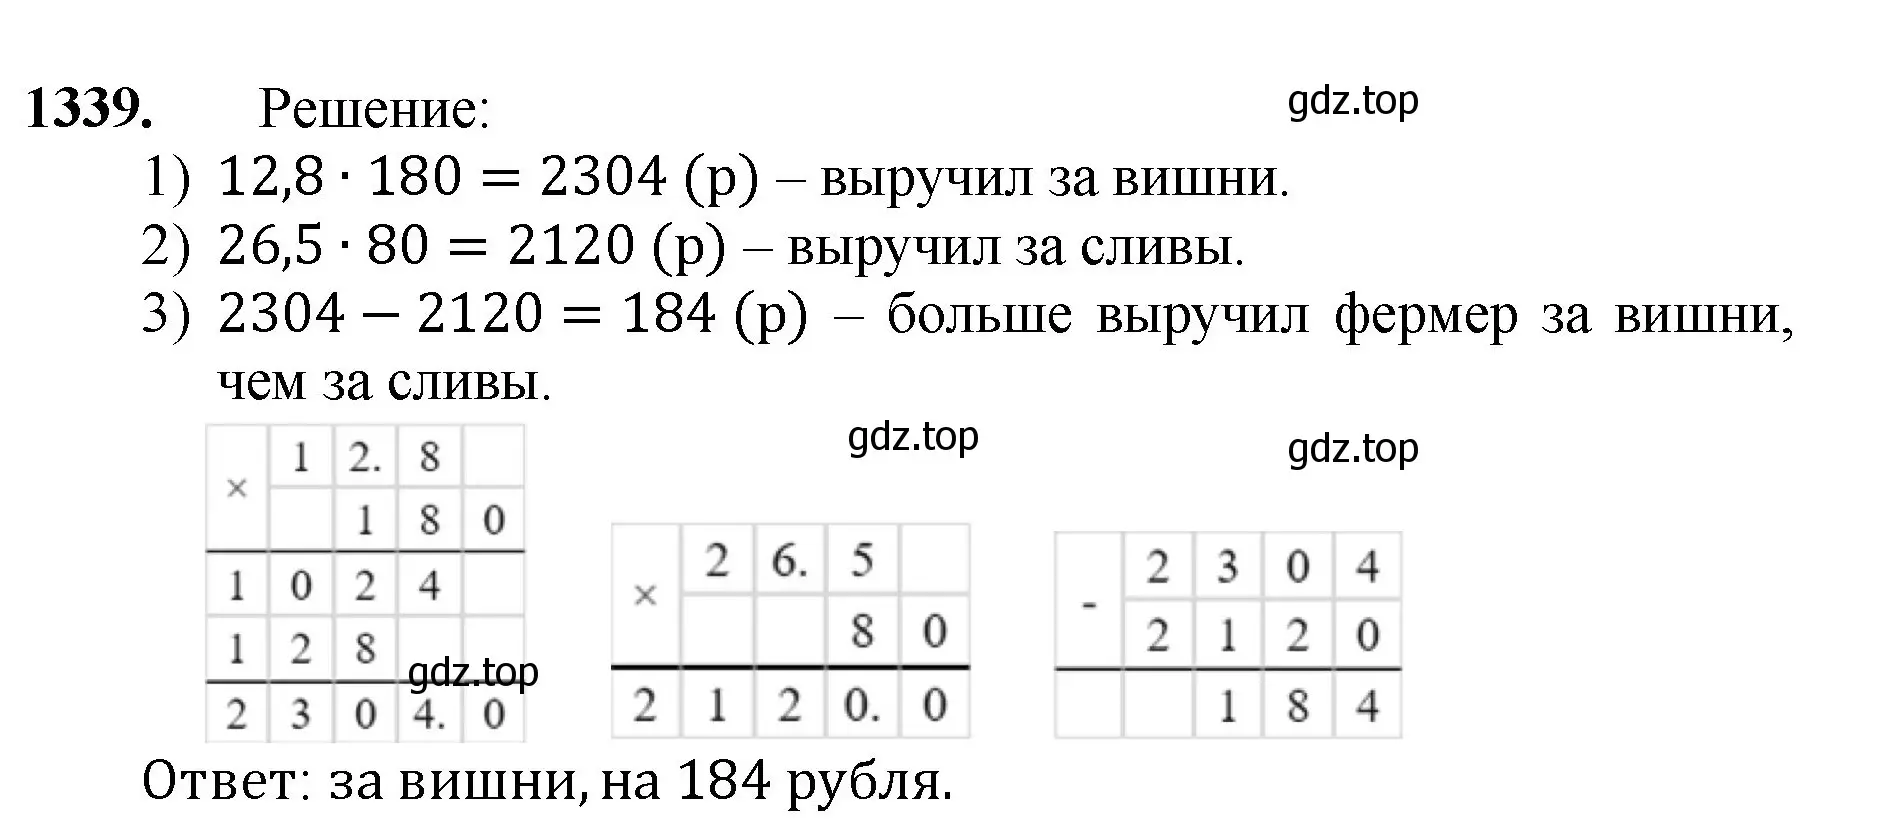 Решение номер 1339 (страница 292) гдз по математике 5 класс Мерзляк, Полонский, учебник